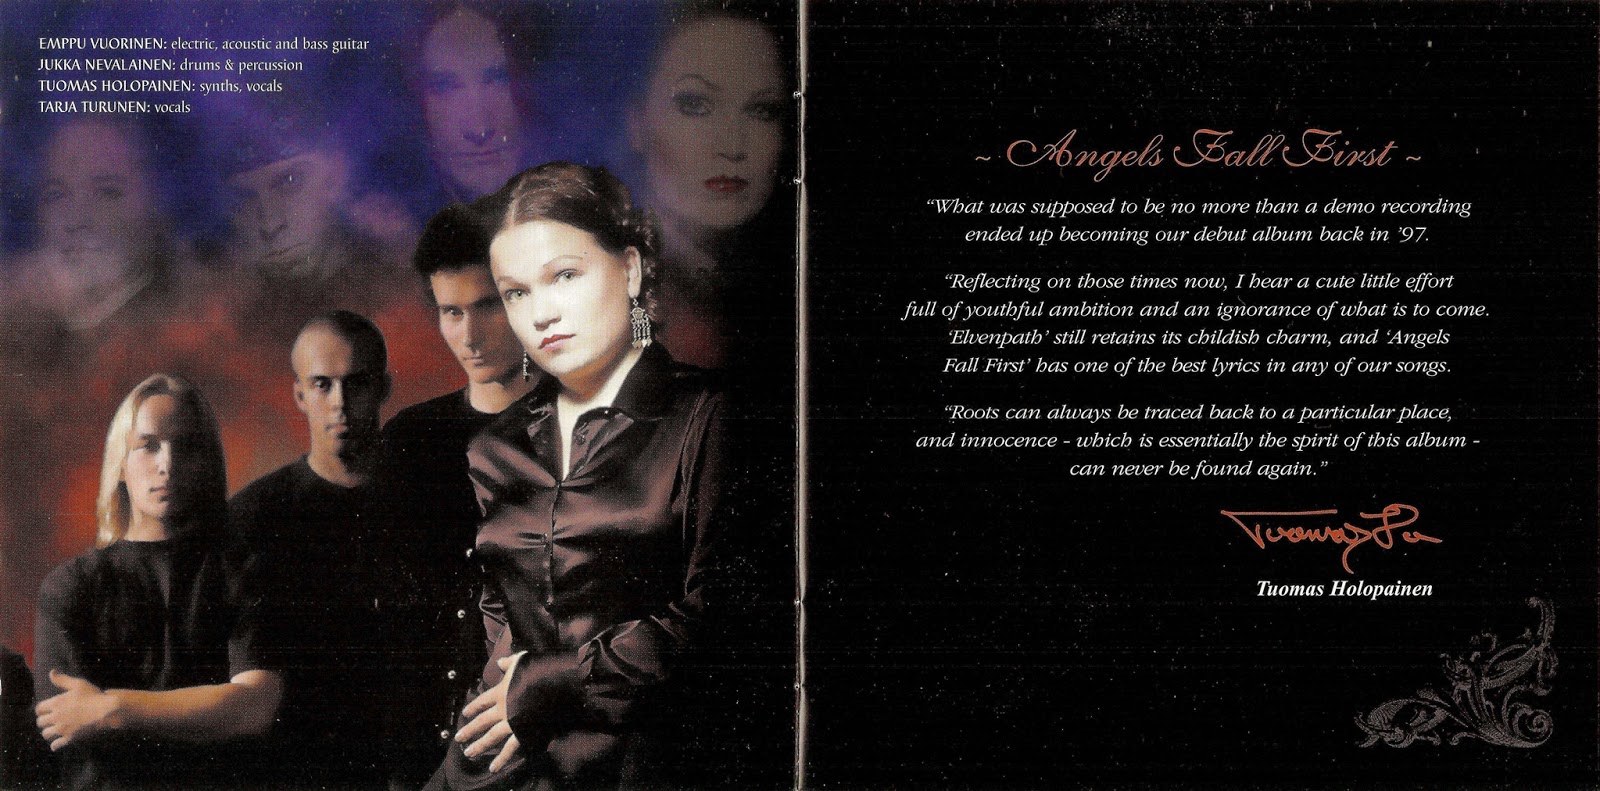 Angels fall sometimes. Найтвиш 1997. Nightwish - Angels Fall first (1997). (1997) - Angels Fall first (1997 Limited Edition). Nightwish Angels Fall first обложка.